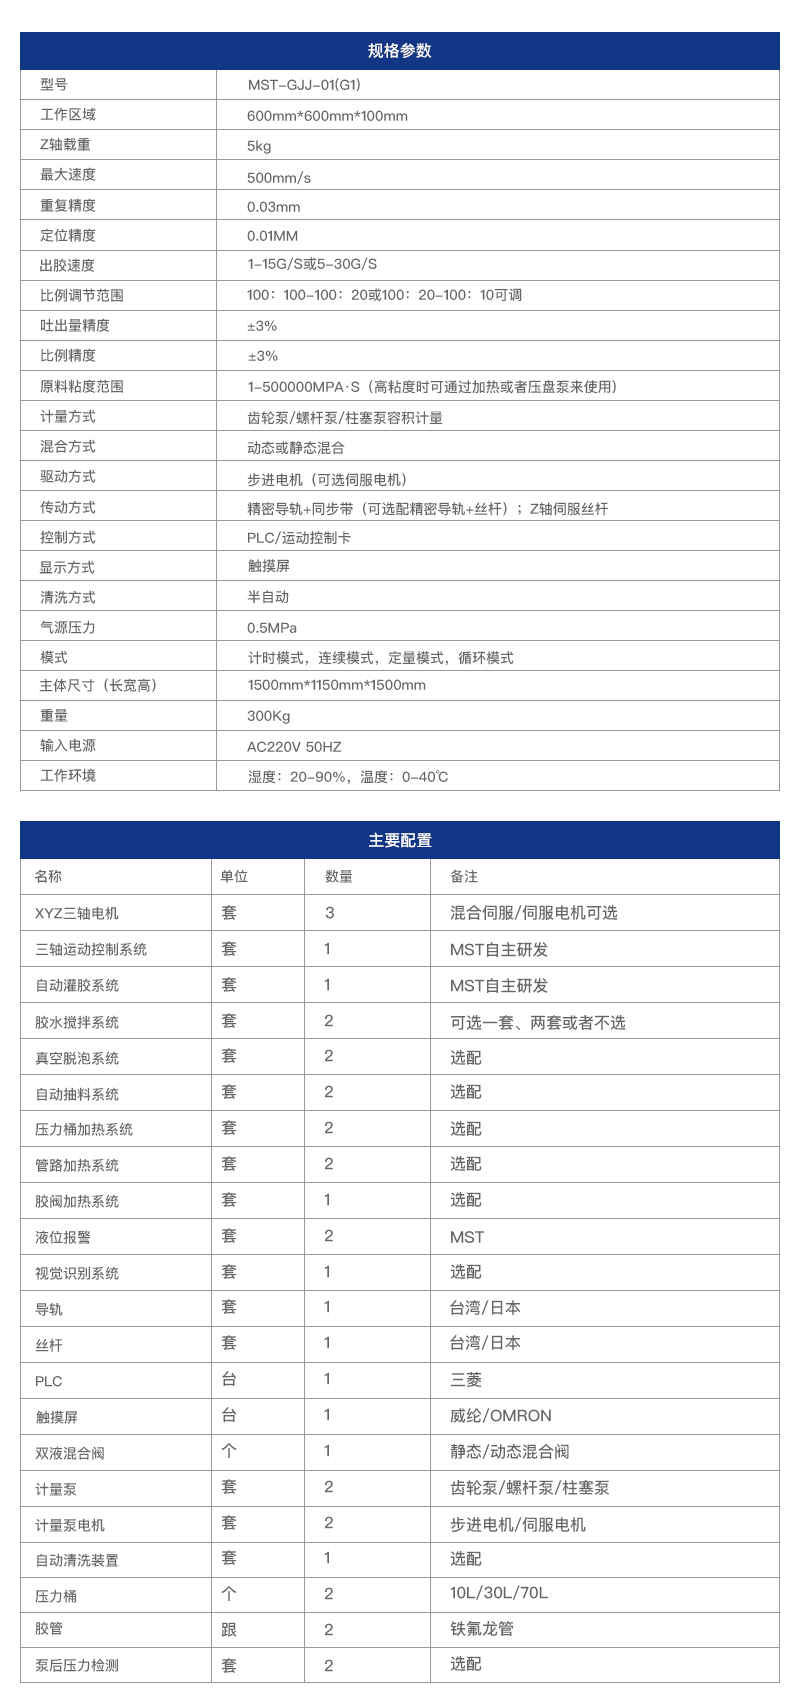 杭州迈伺特全主动双液2020最新领取彩金的白菜
参数用处